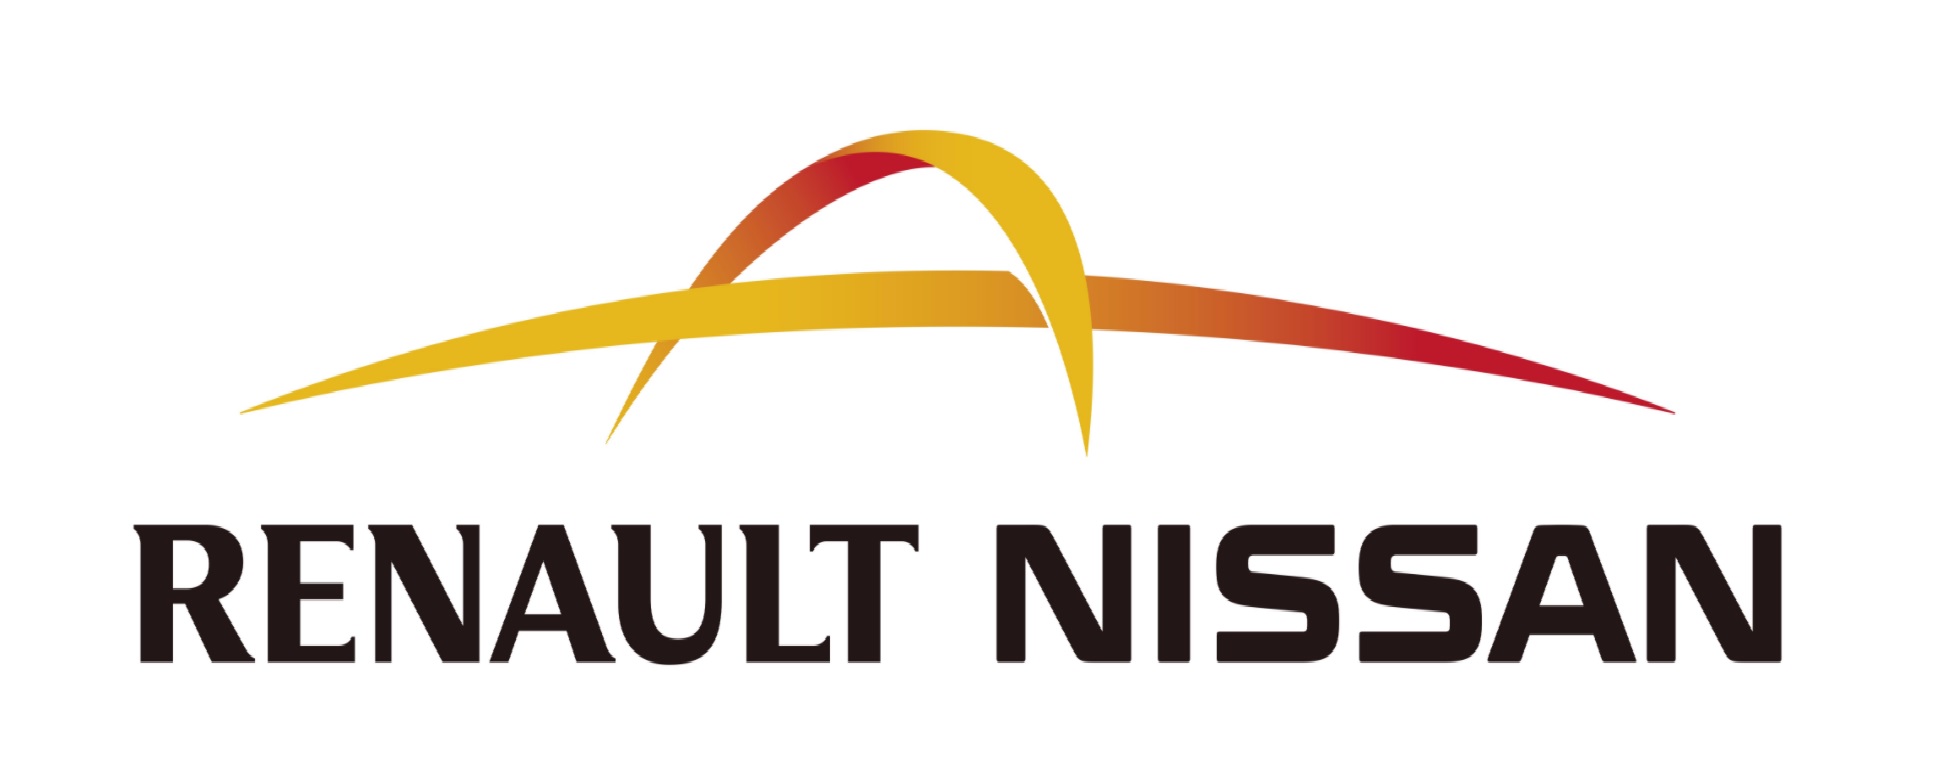 Κοινή εταιρεία για Renault και Nissan